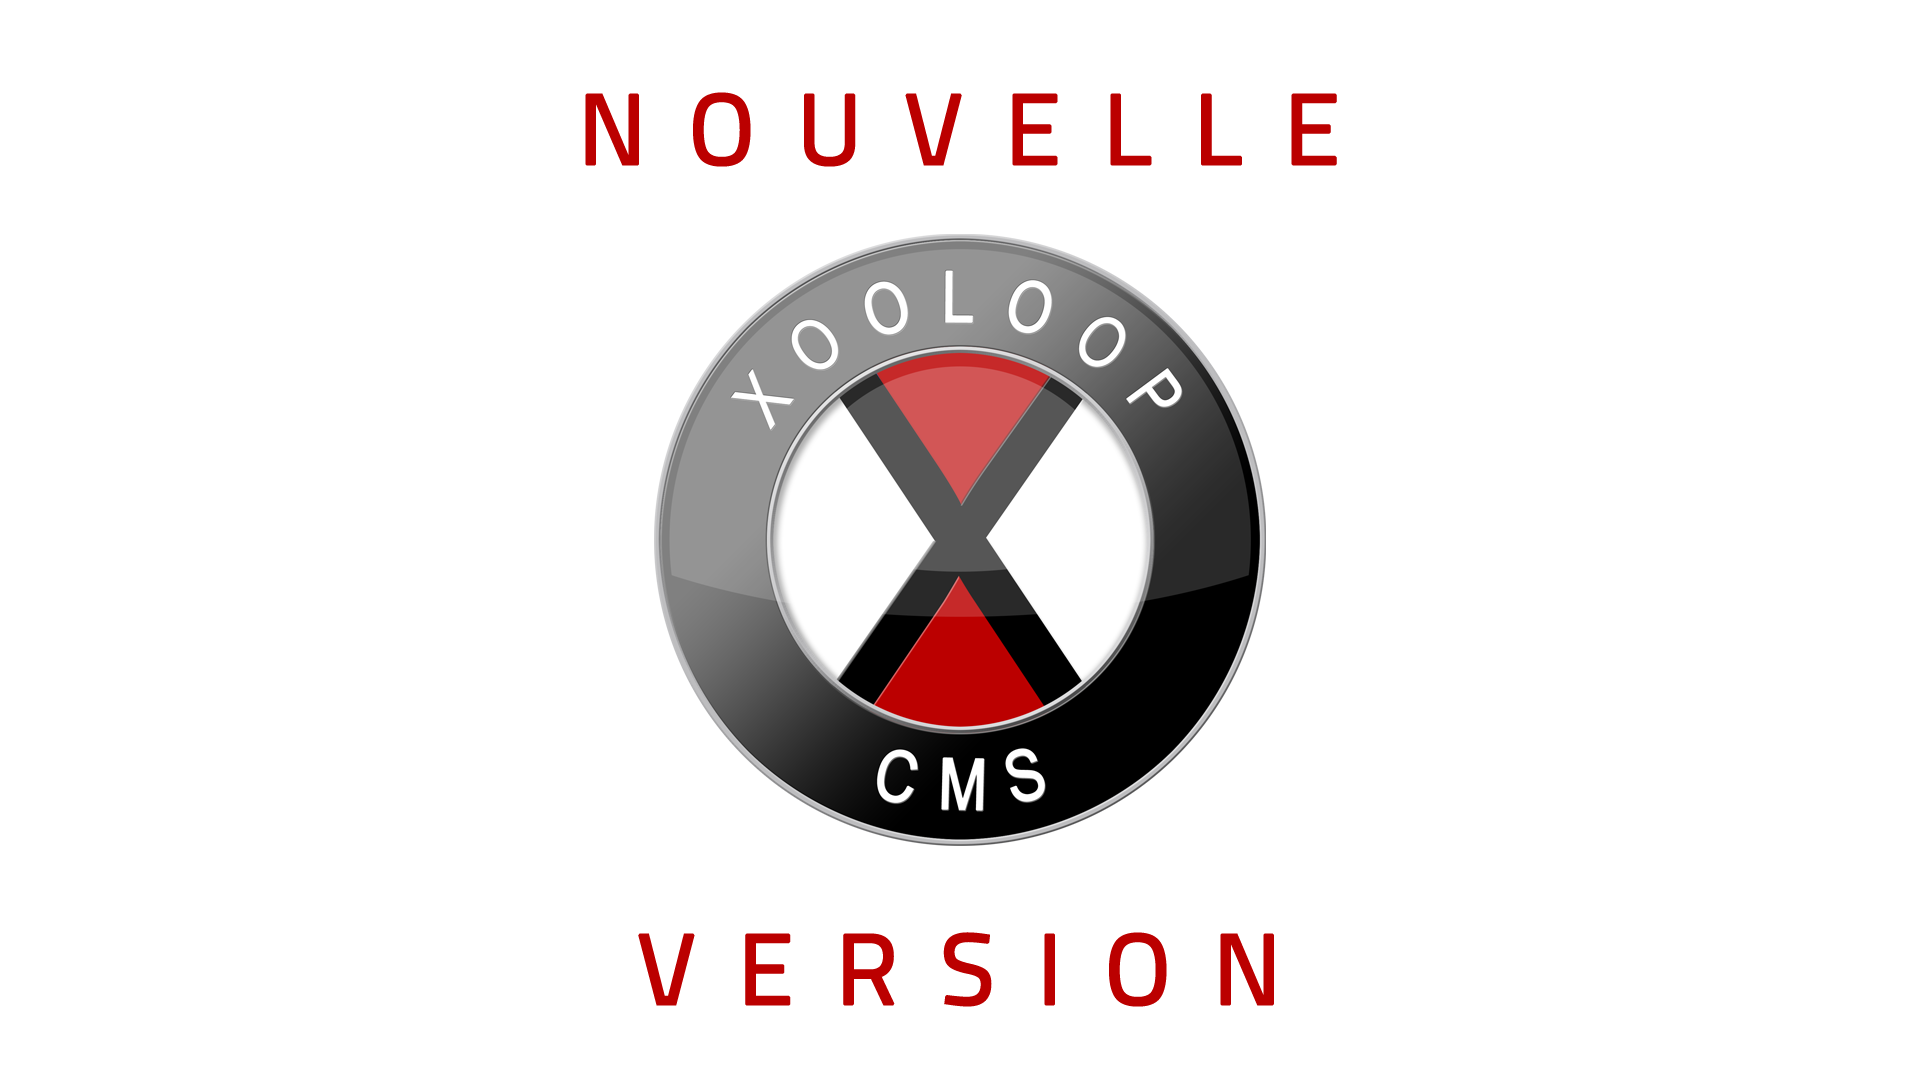 Nouvelle version de Xooloop CMS (v3.6.0)